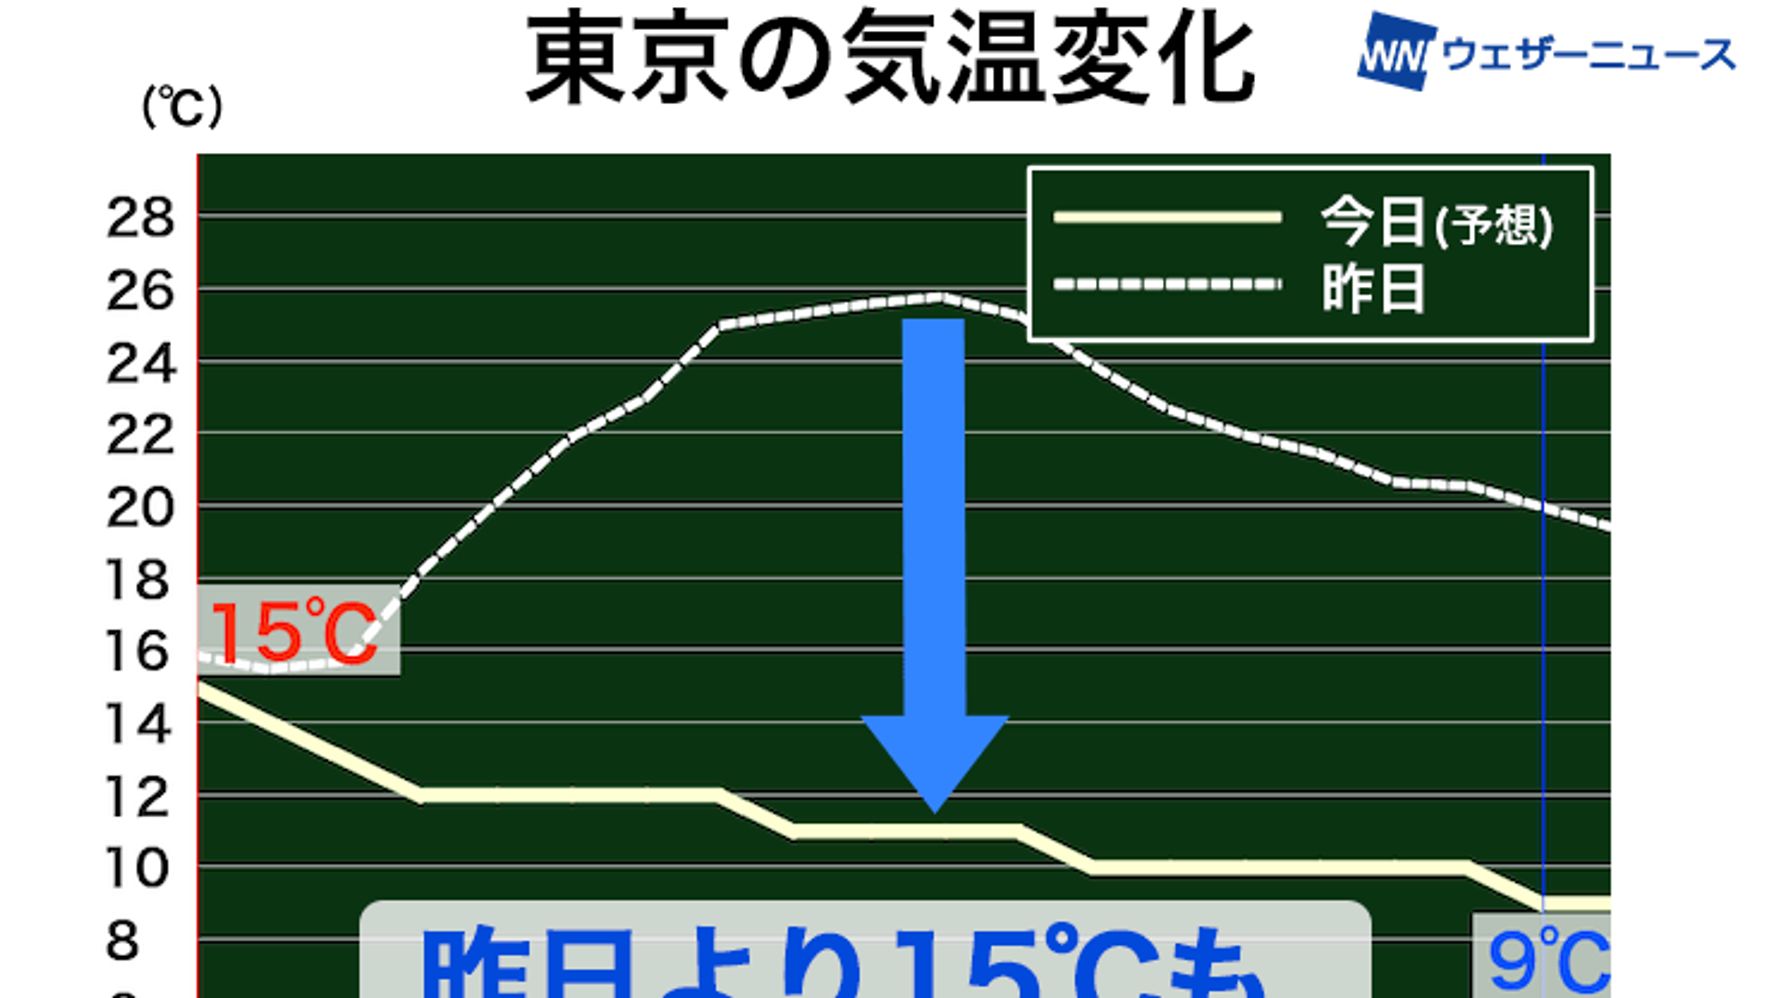 東京、昨日より15℃前後低下と予想。気温の変化で体調管理に注意を